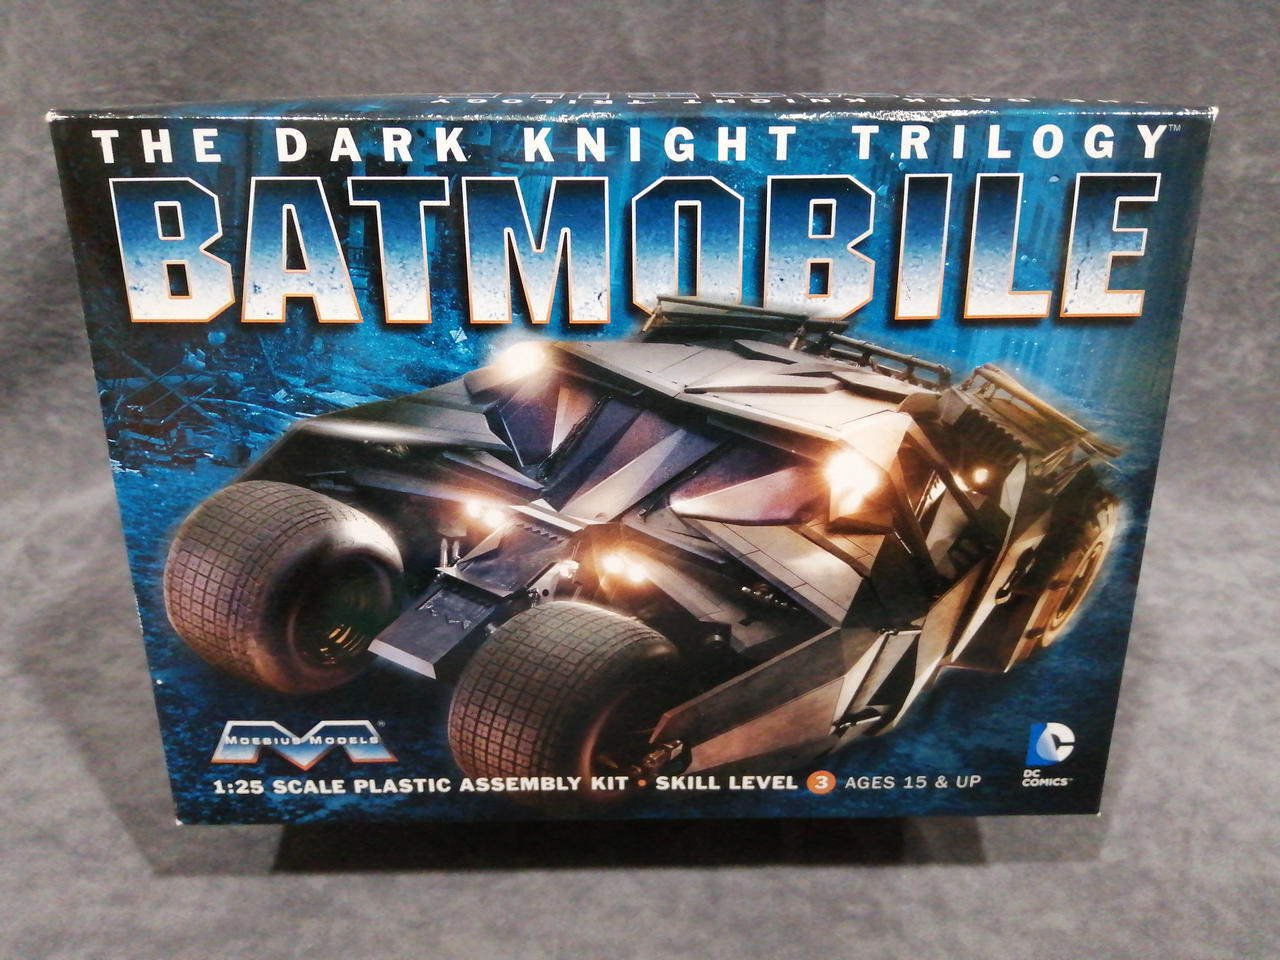 Moebius Models 1/25 Batmobile Tumbler Plastic Model